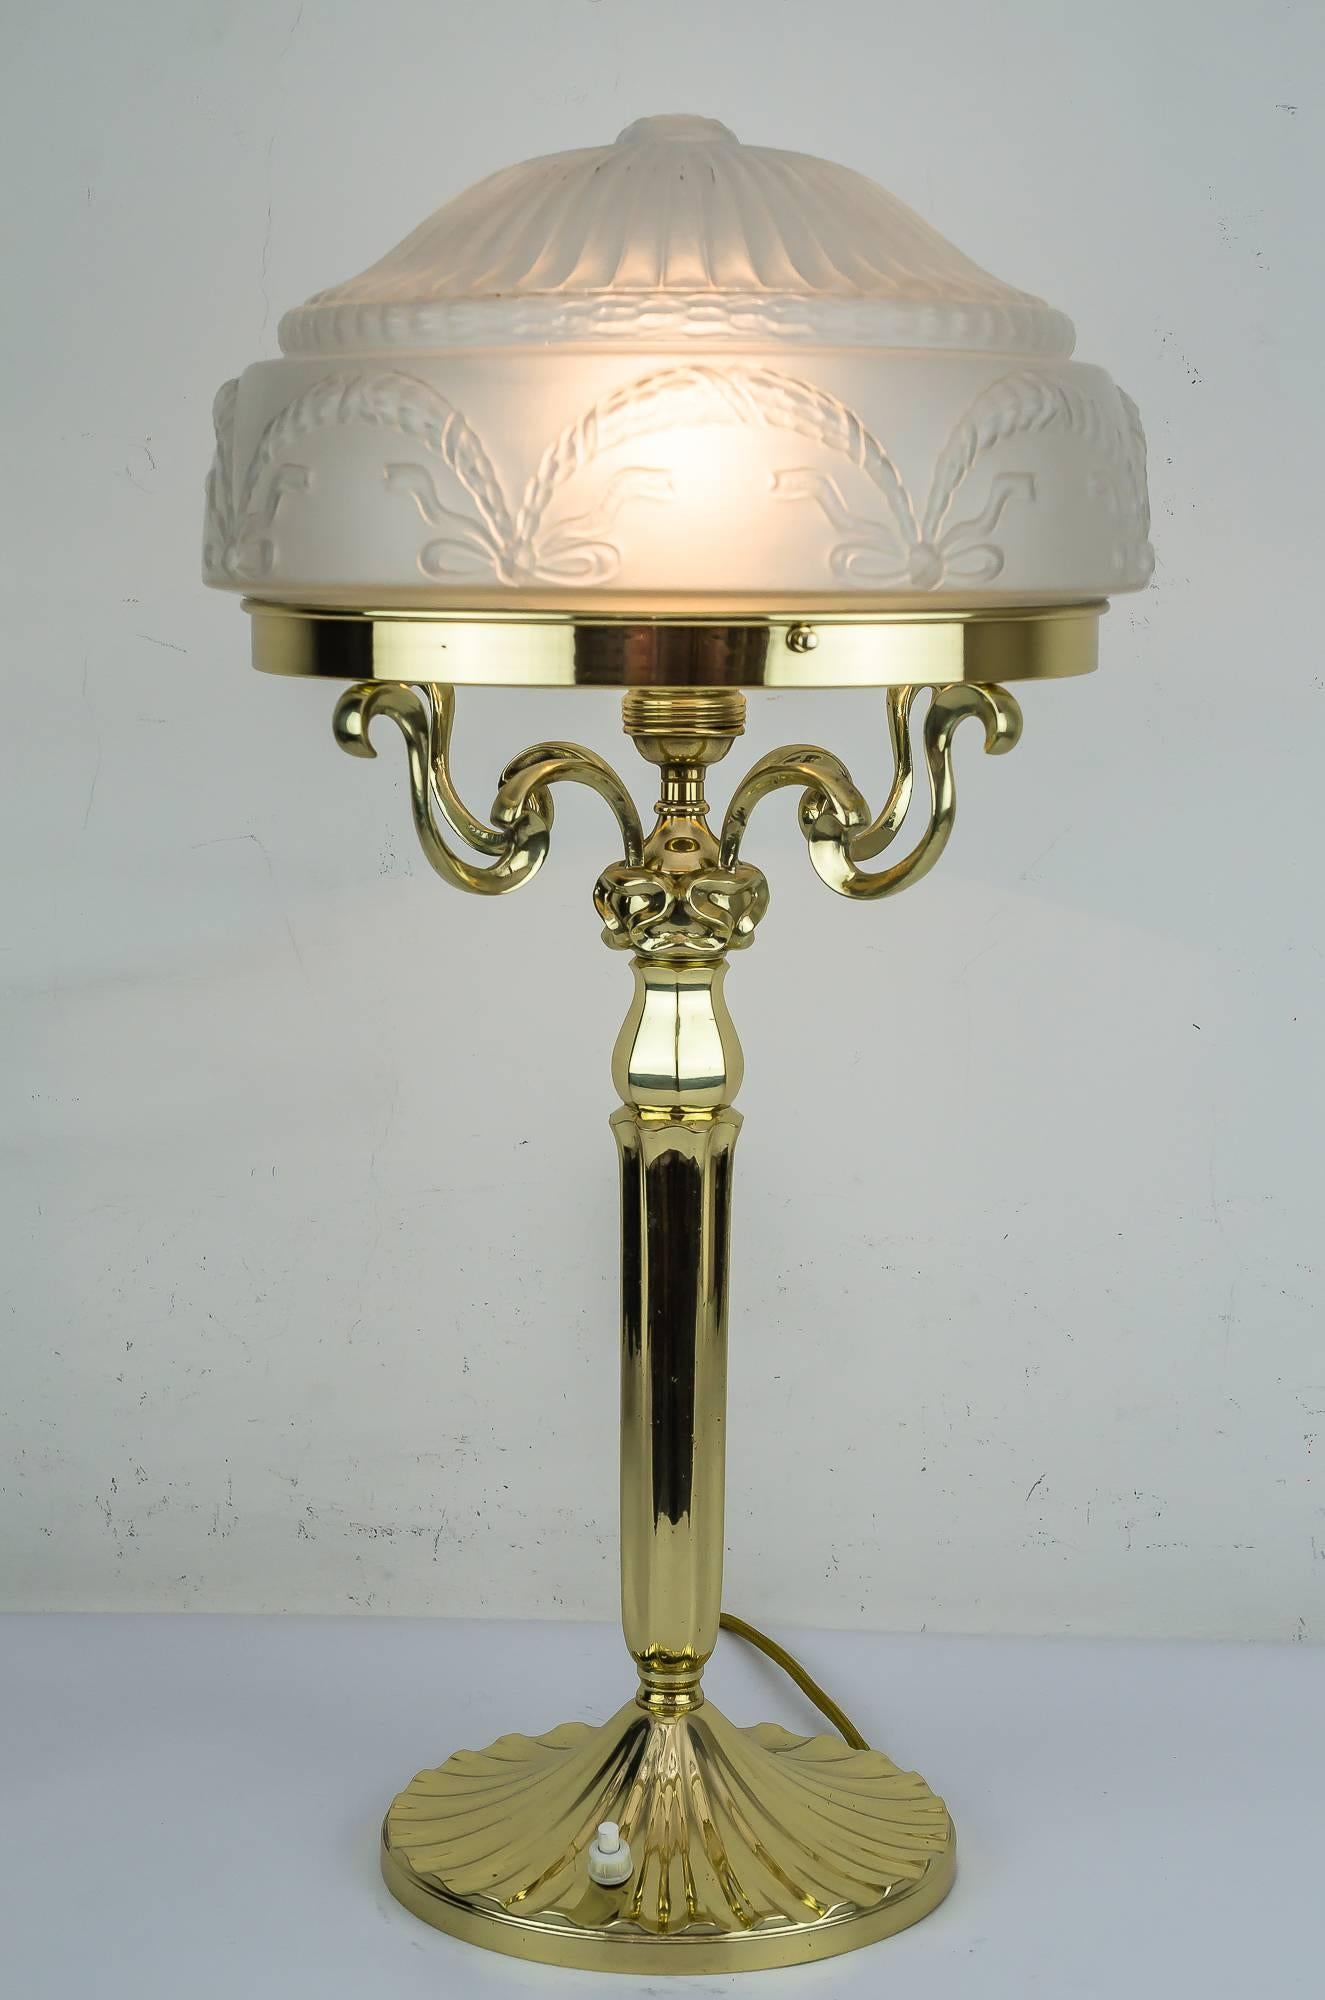 Lampe de table Jugendst, vers 1908
Polis et émaillés au four.